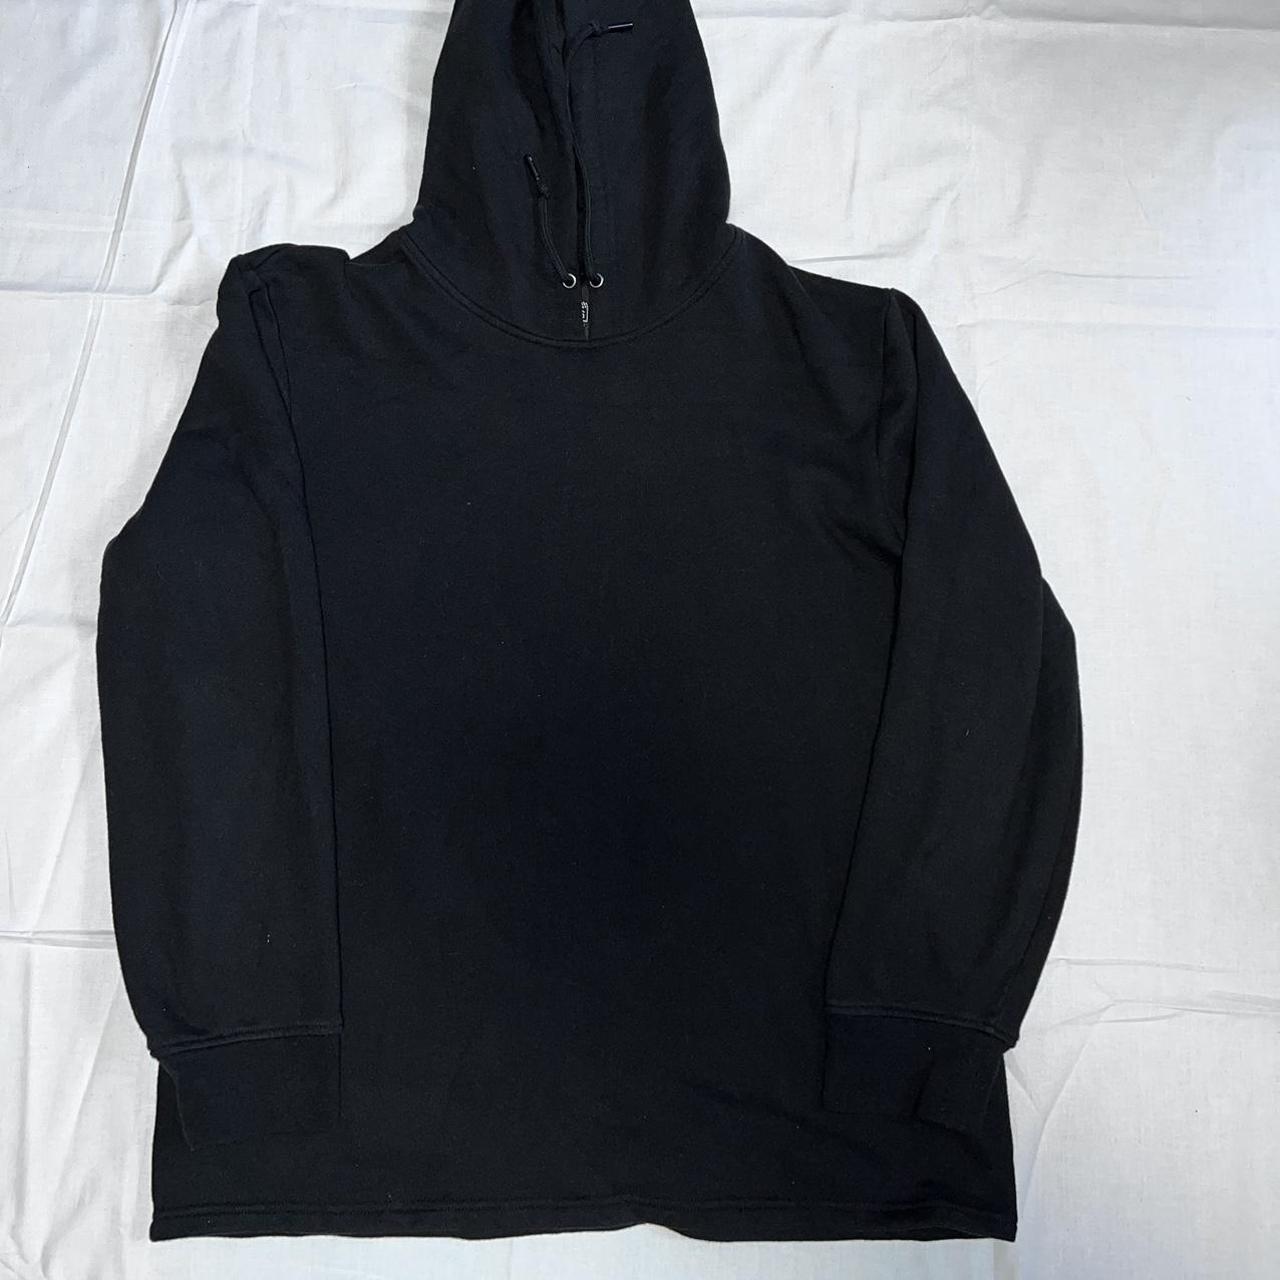 Black plain hoodie #blackhoodie #lurkingclass - Depop